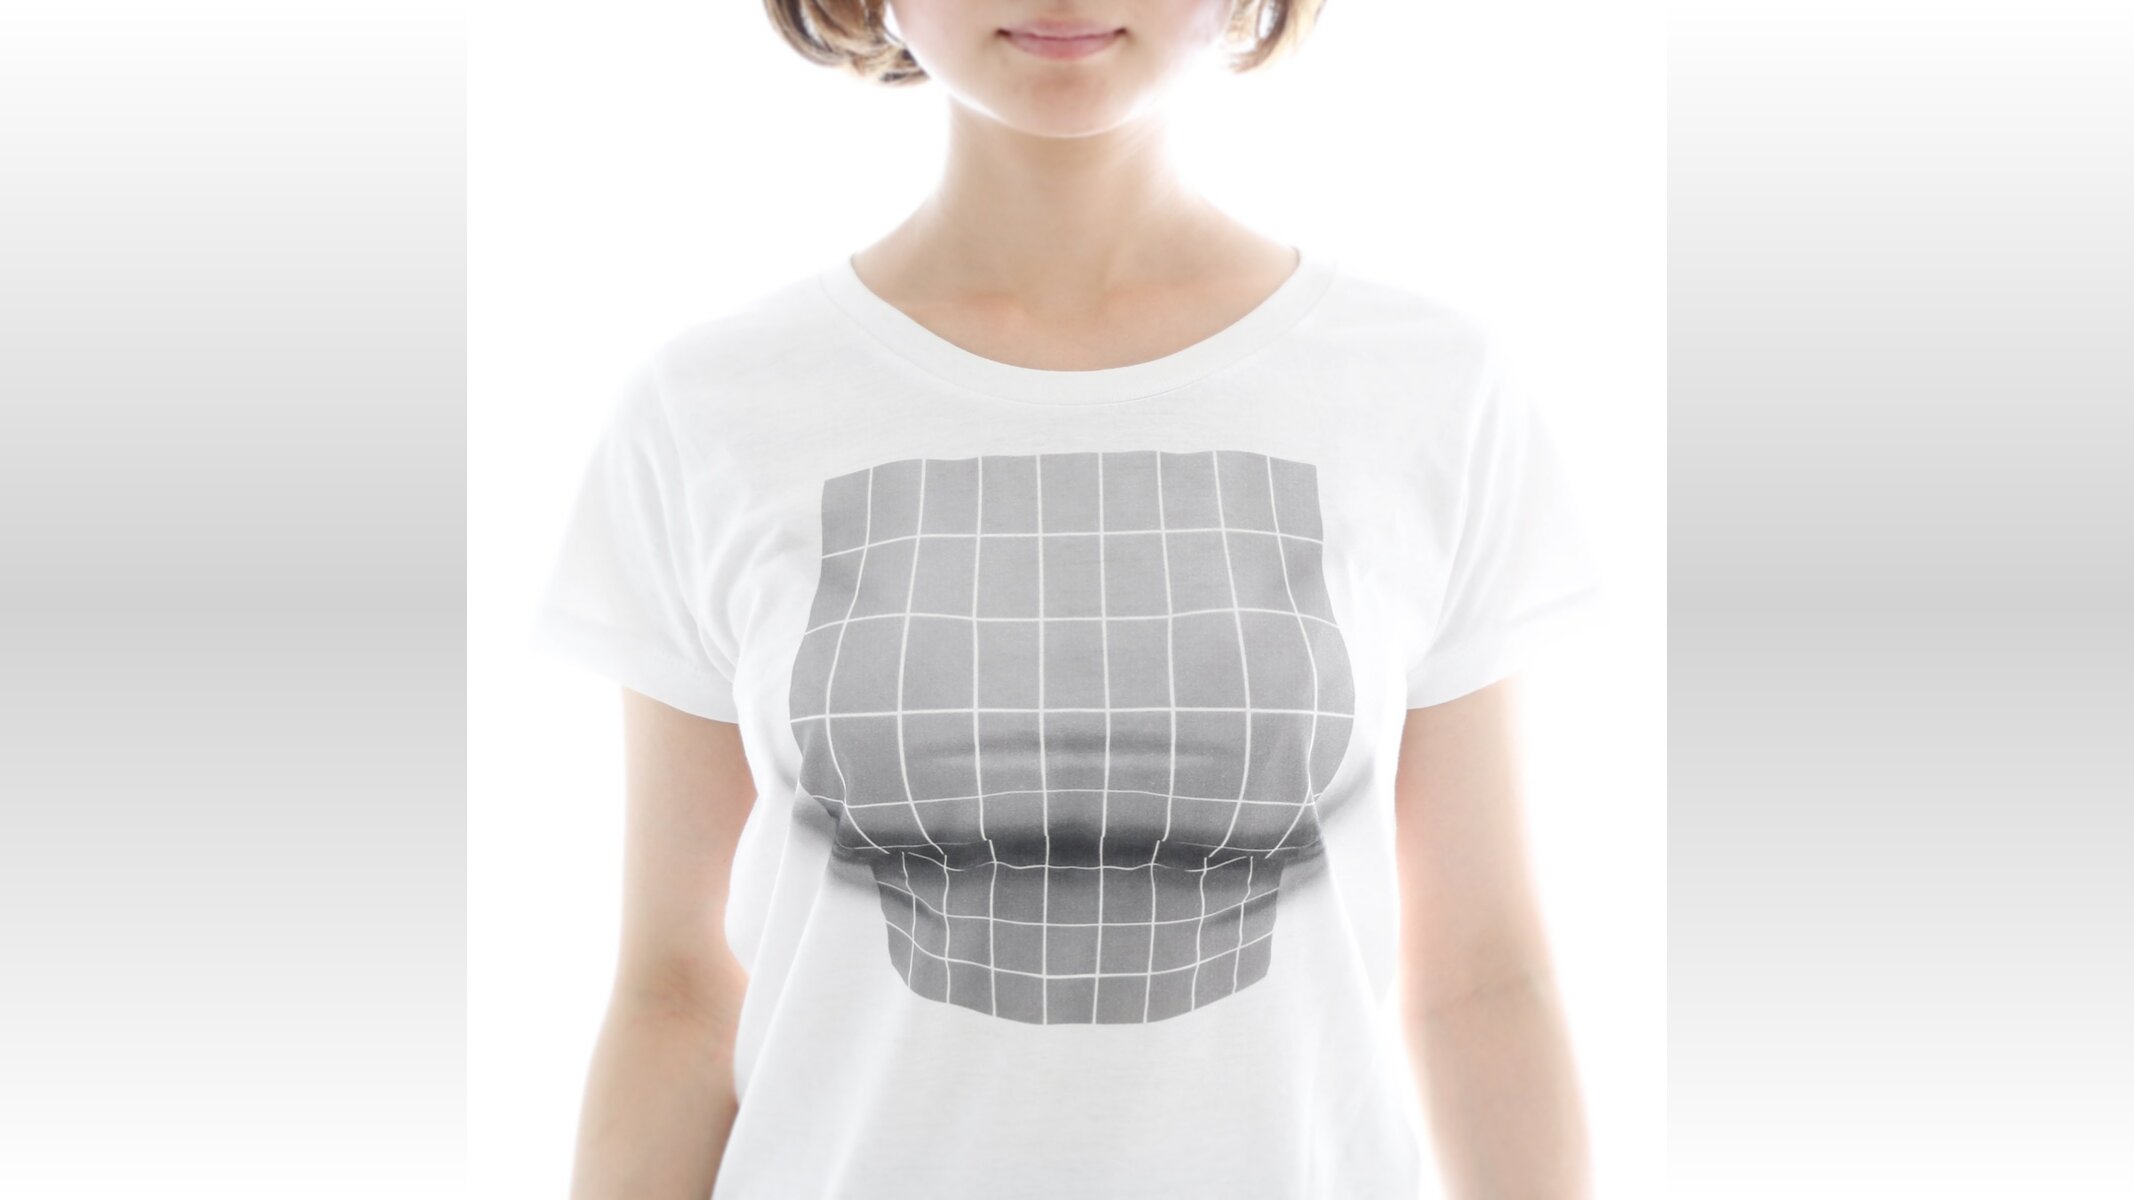 錯視で胸を大きく魅せるtシャツ爆誕 格子模様を胸いっぱいに膨らませボリューム感を演出 17年6月14日 Biglobeニュース